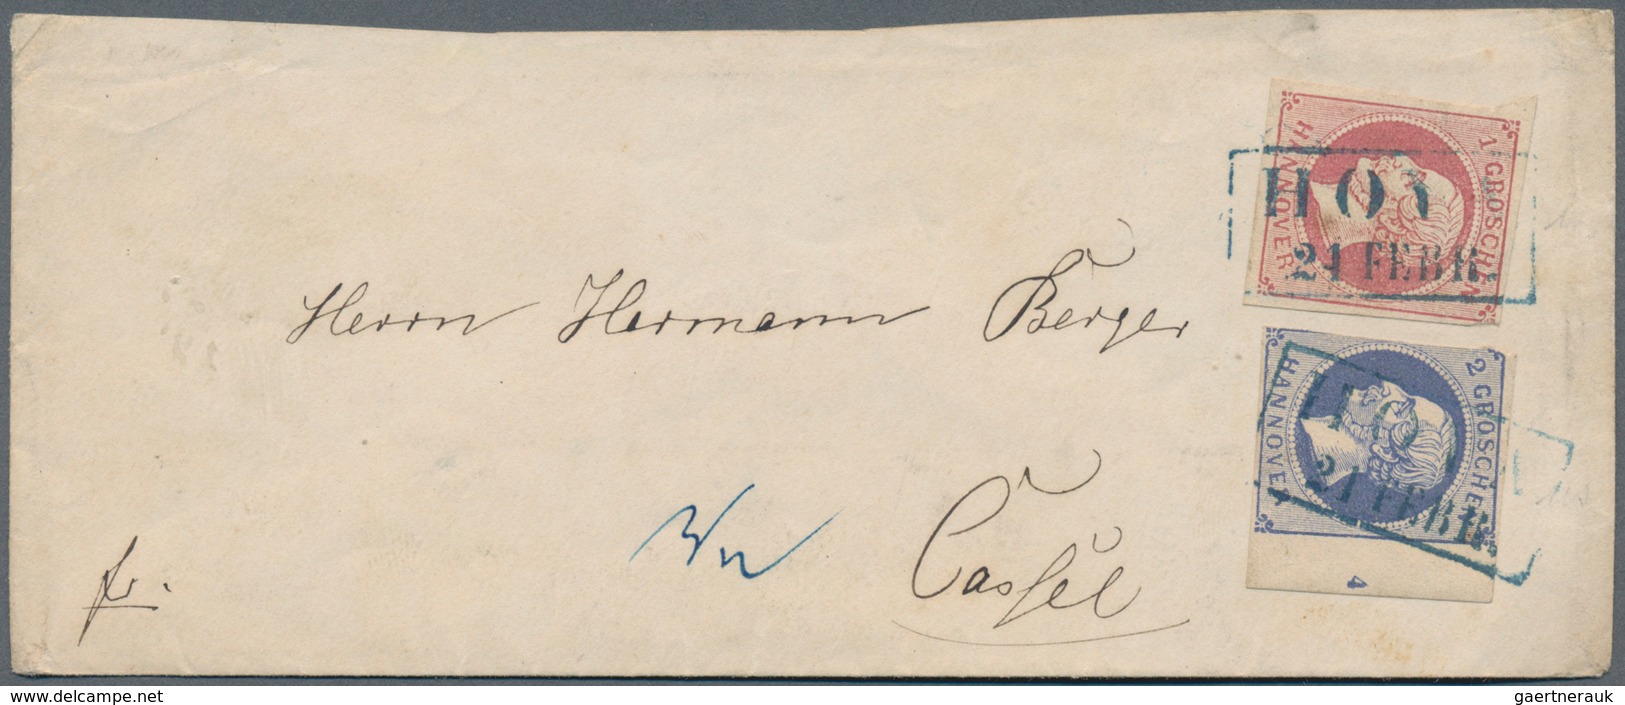 Hannover - Marken und Briefe: 1850/1867 (ca.), Partie von ca. 90 Briefen/Ganzsachen/Vorderseiten ab